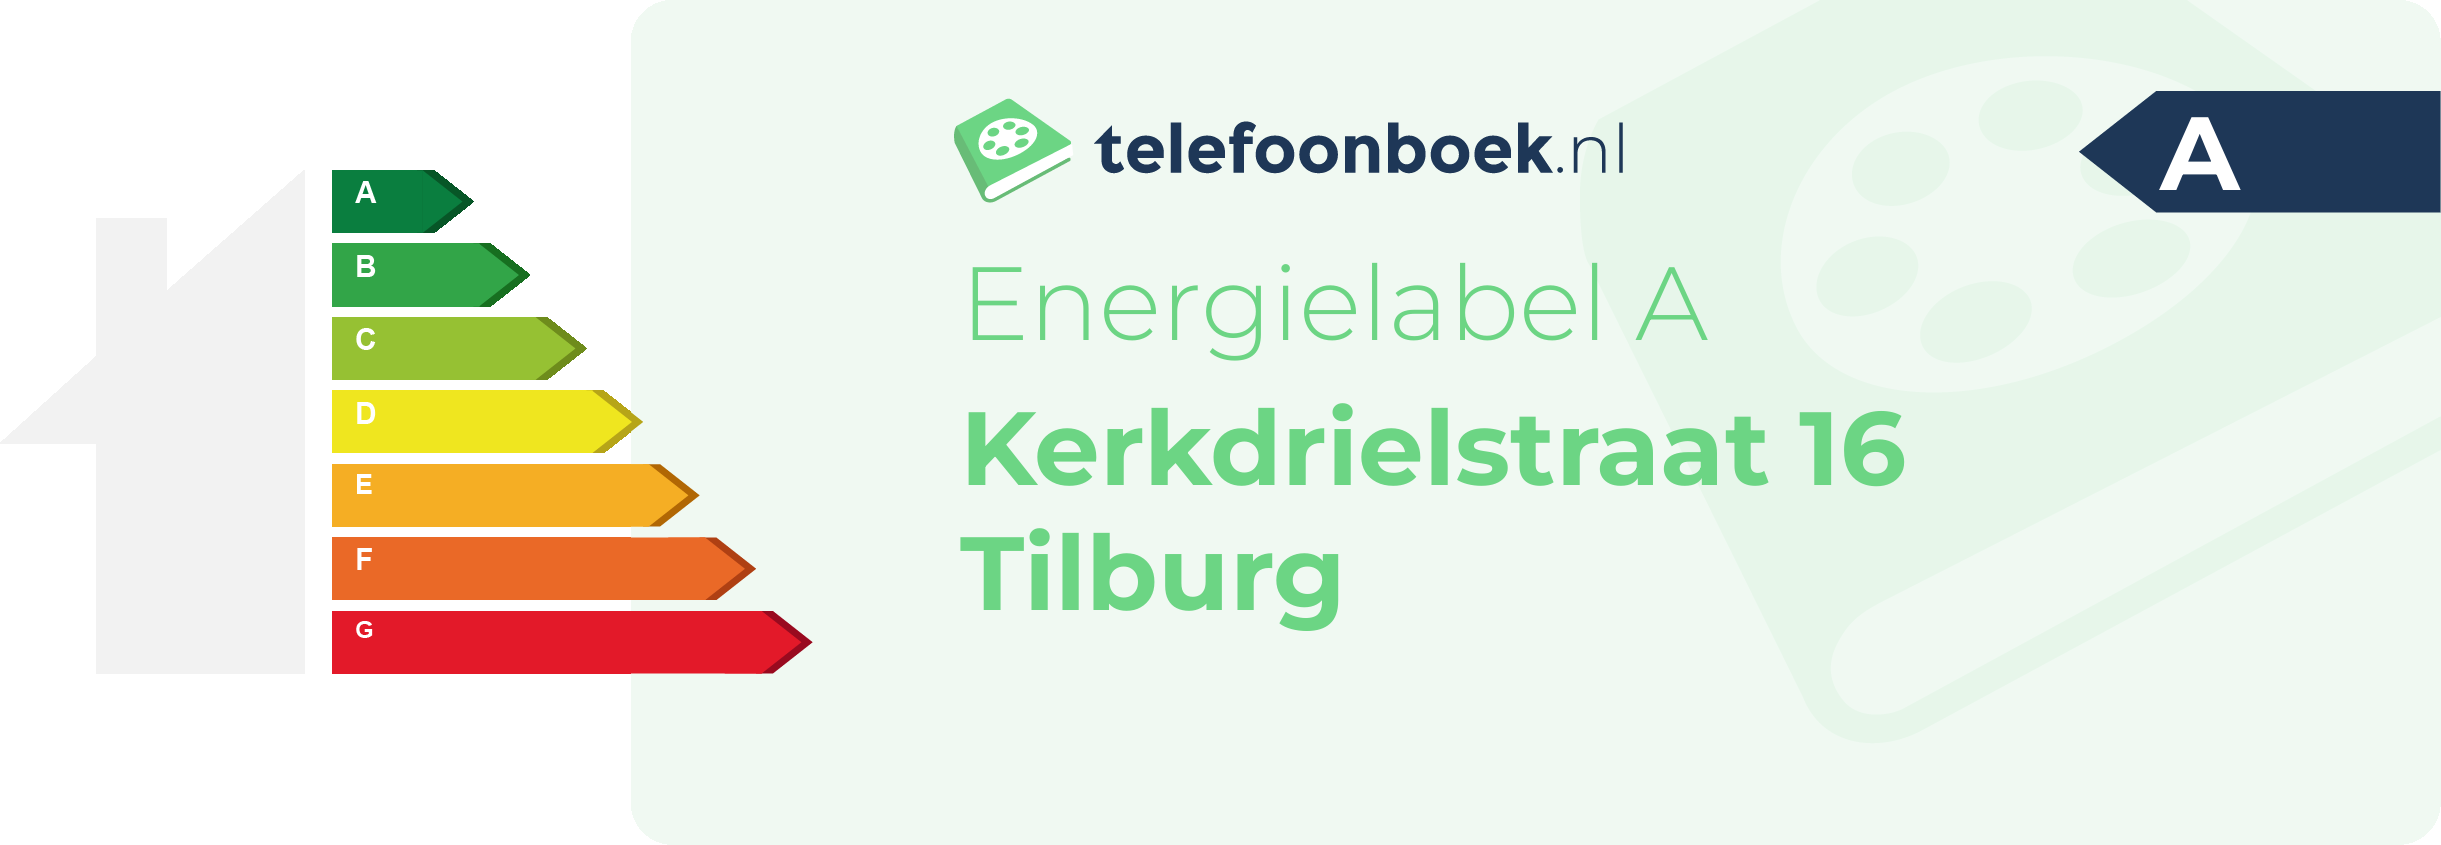 Energielabel Kerkdrielstraat 16 Tilburg